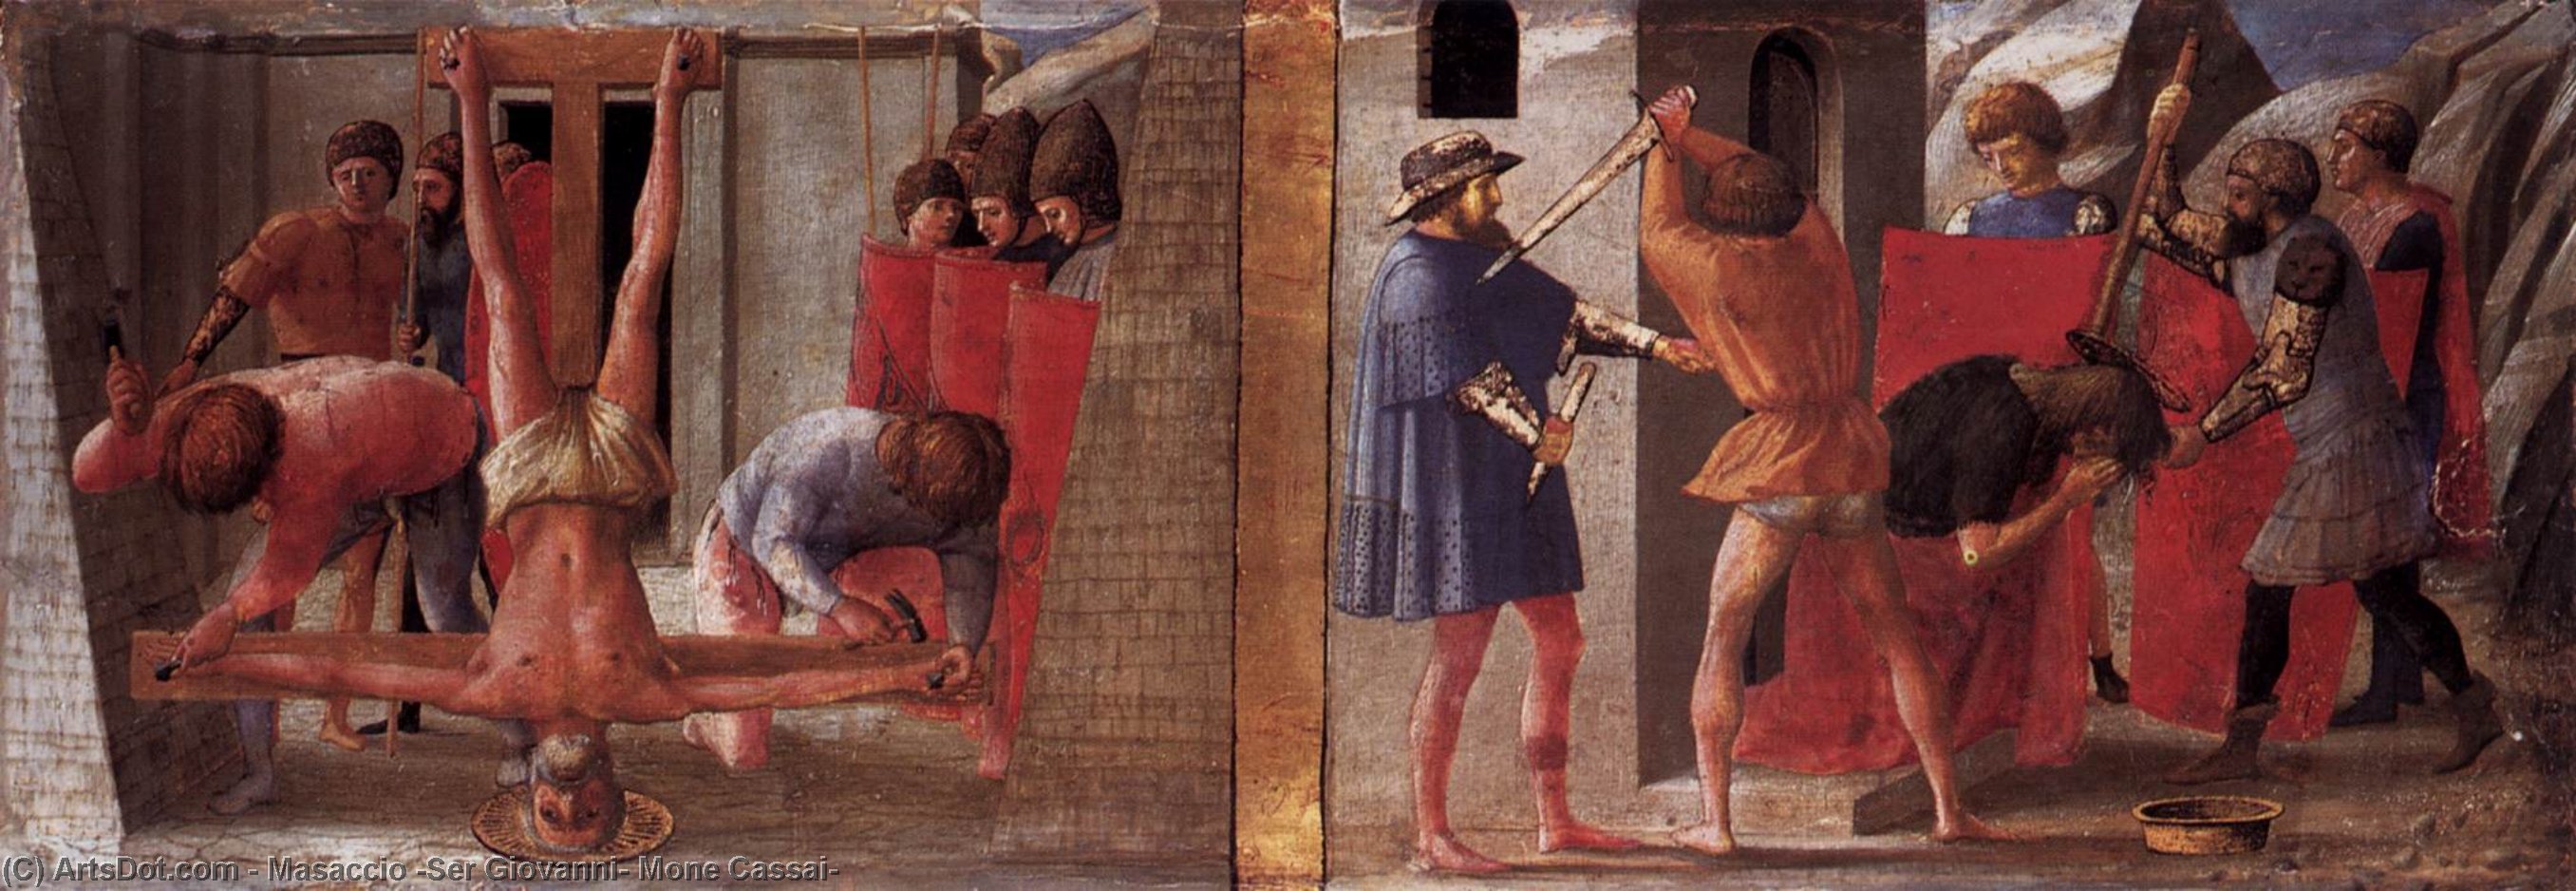 Wikioo.org - Bách khoa toàn thư về mỹ thuật - Vẽ tranh, Tác phẩm nghệ thuật Masaccio (Ser Giovanni, Mone Cassai) - Predella panel from the Pisa Altar